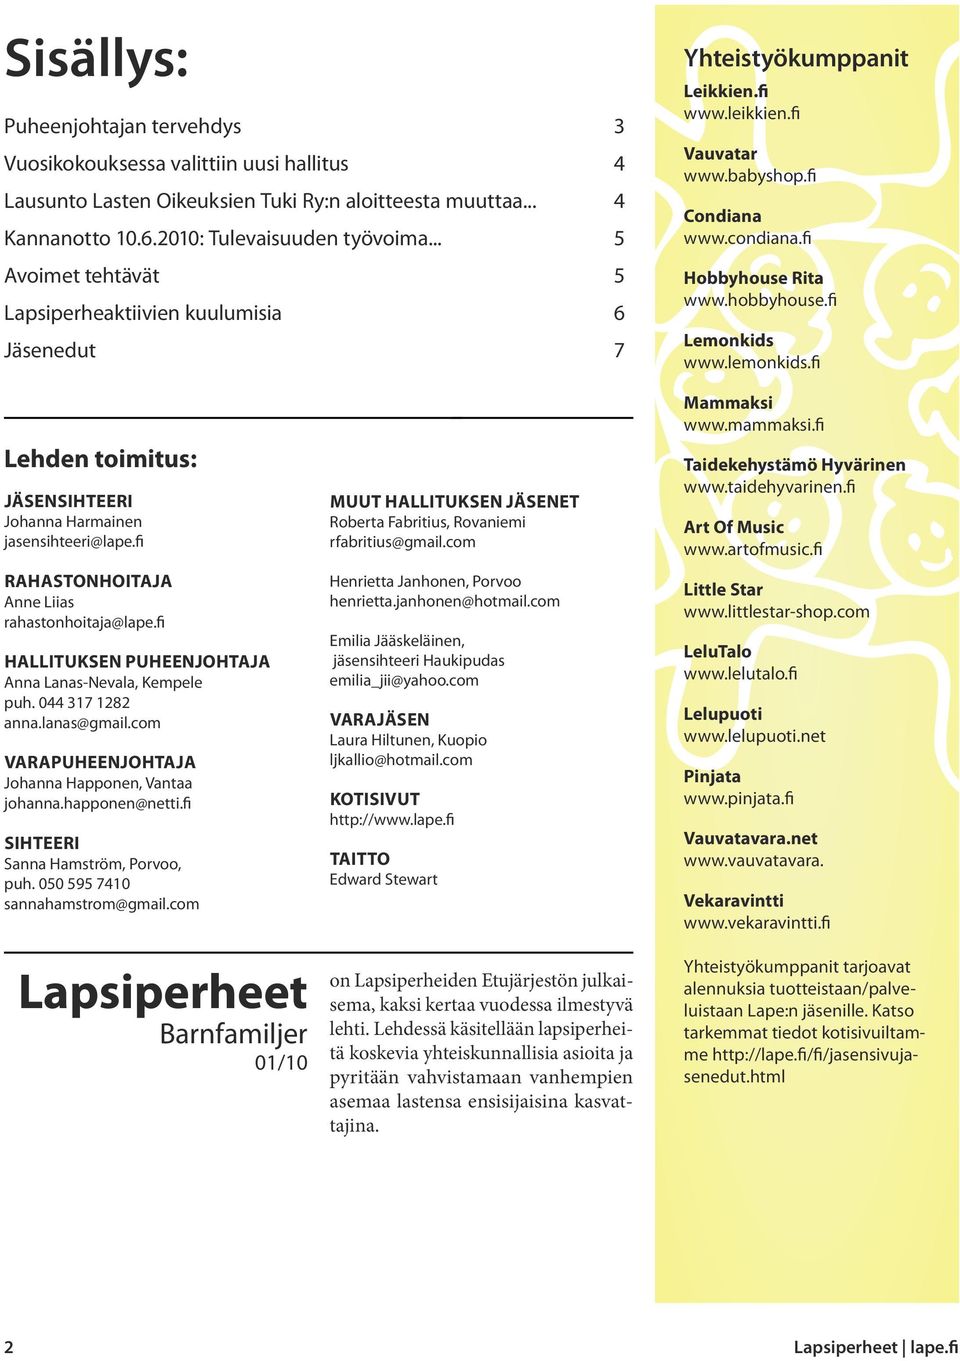 fi Lemonkids www.lemonkids.fi Lehden toimitus: Jäsensihteeri Johanna Harmainen jasensihteeri@lape.fi Rahastonhoitaja Anne Liias rahastonhoitaja@lape.